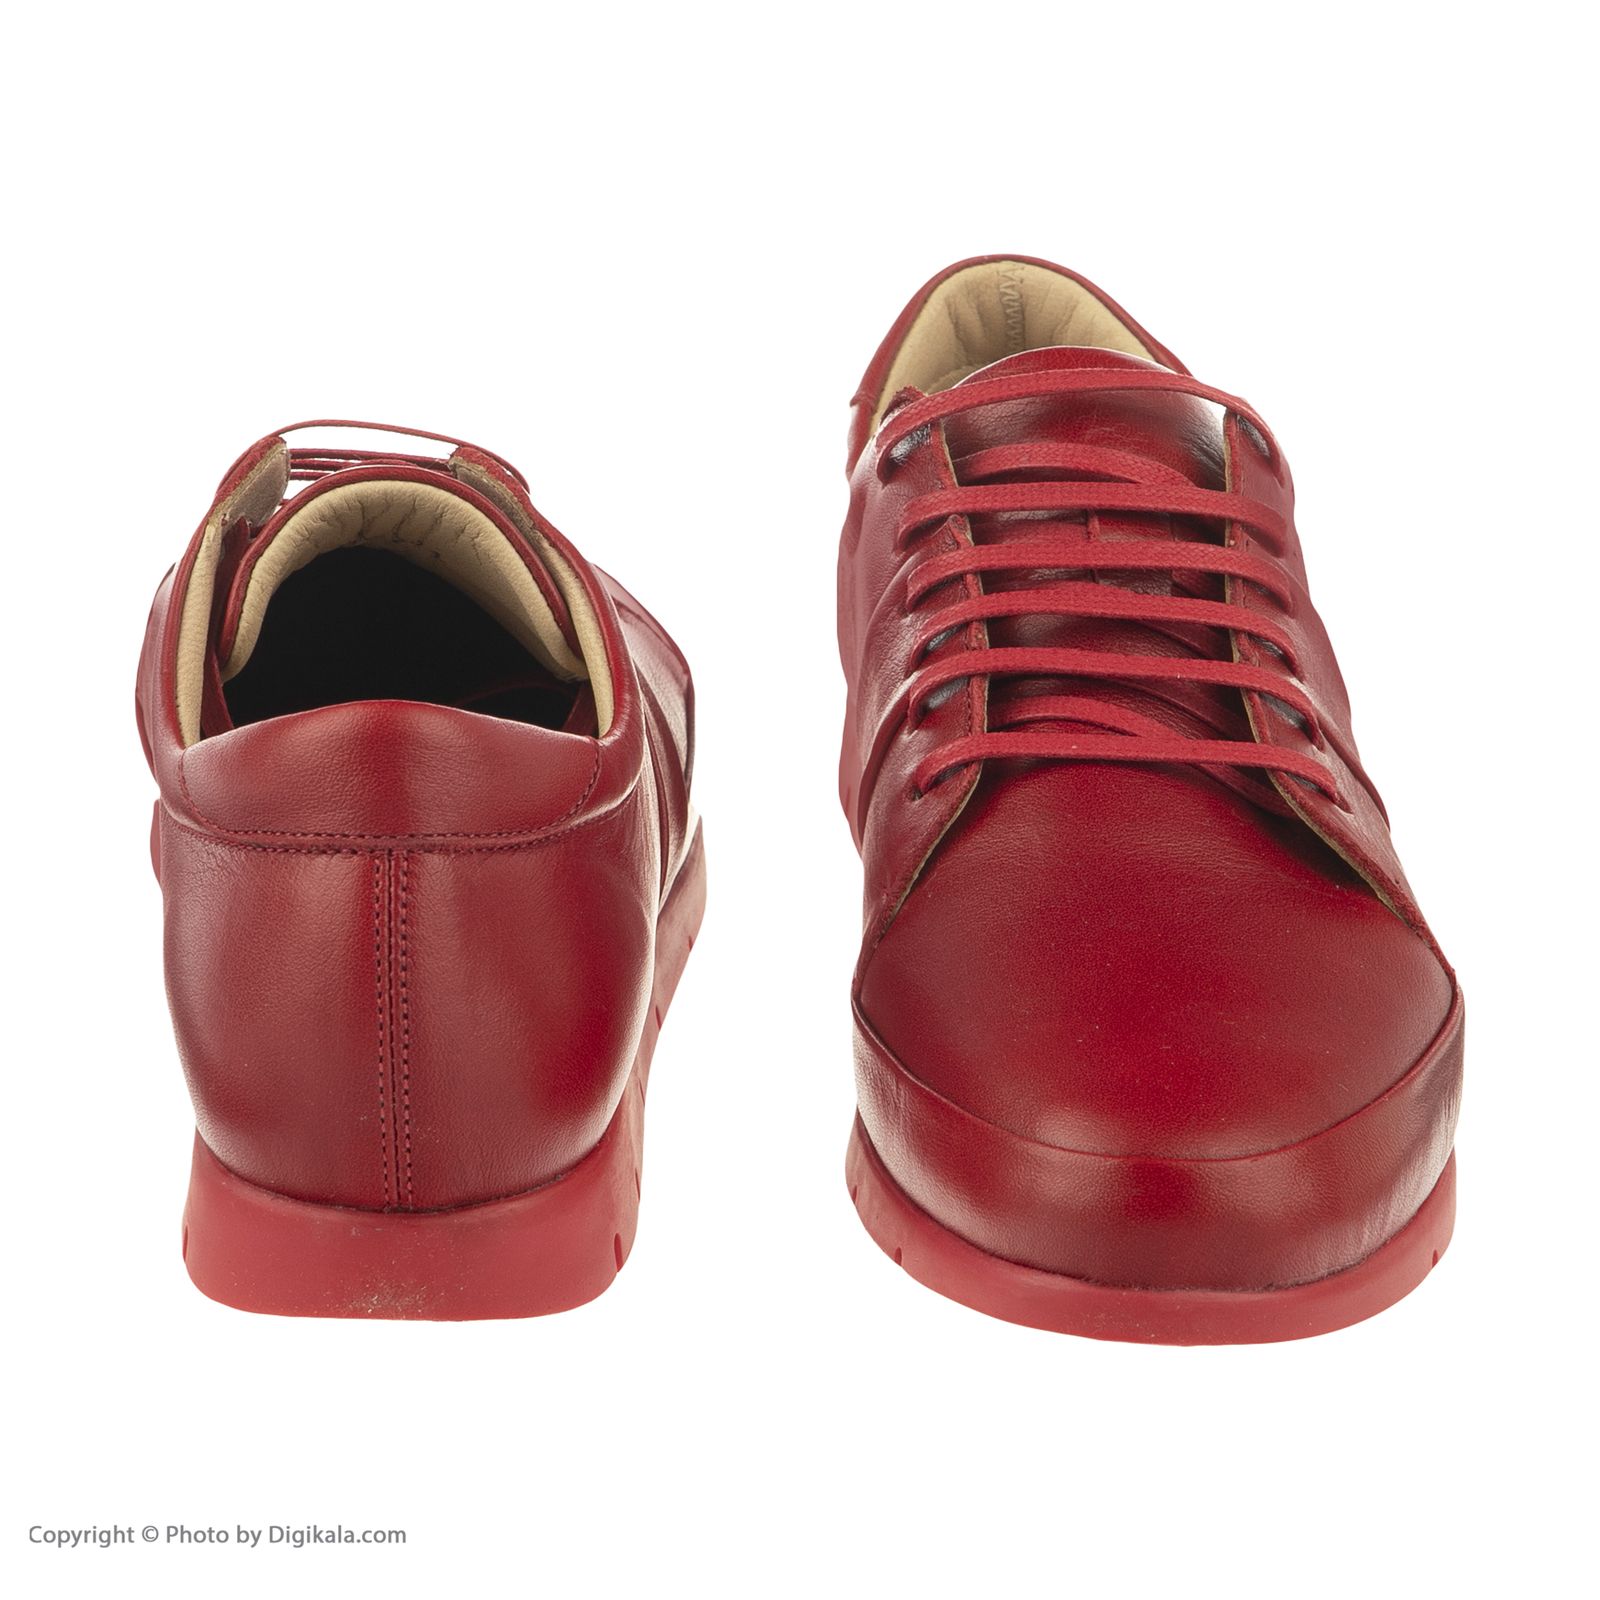 کفش روزمره زنانه برتونیکس مدل 985-24 - قرمز - 4